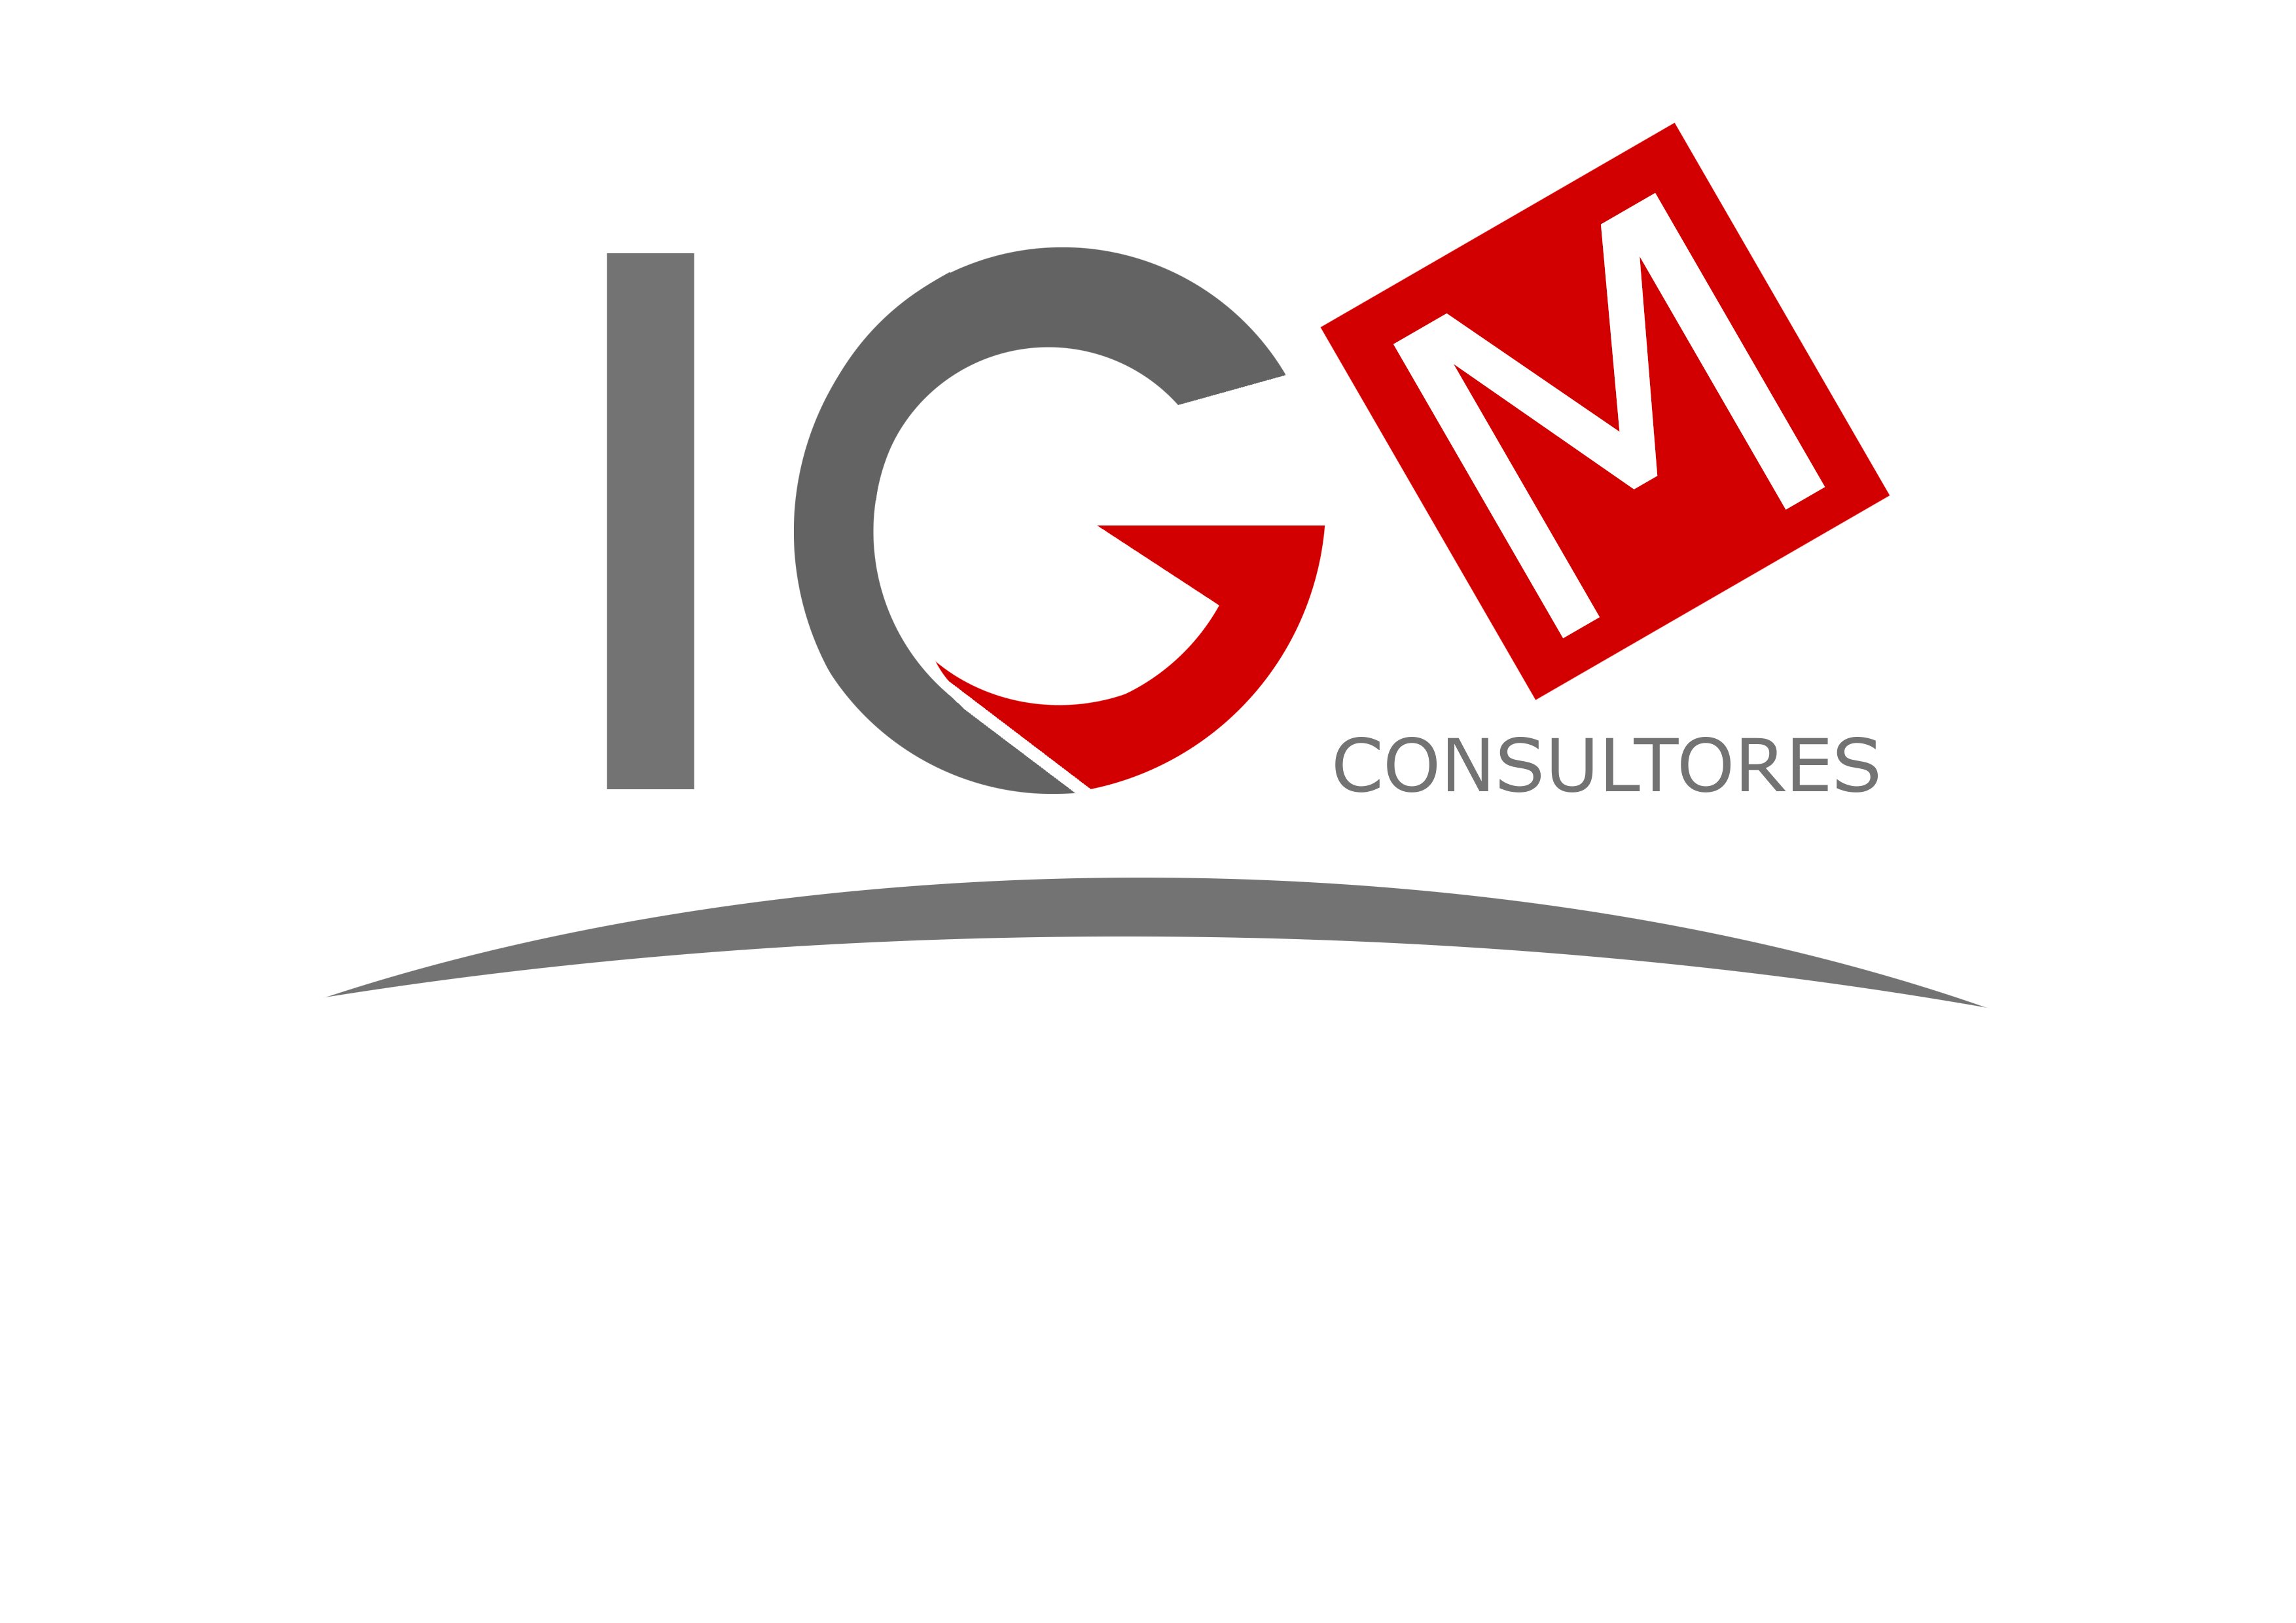 Consultora empresarial dedicada al asesoramiento fiscal-contable-laboral y mercantil situada en la ciudad de Salamanca.